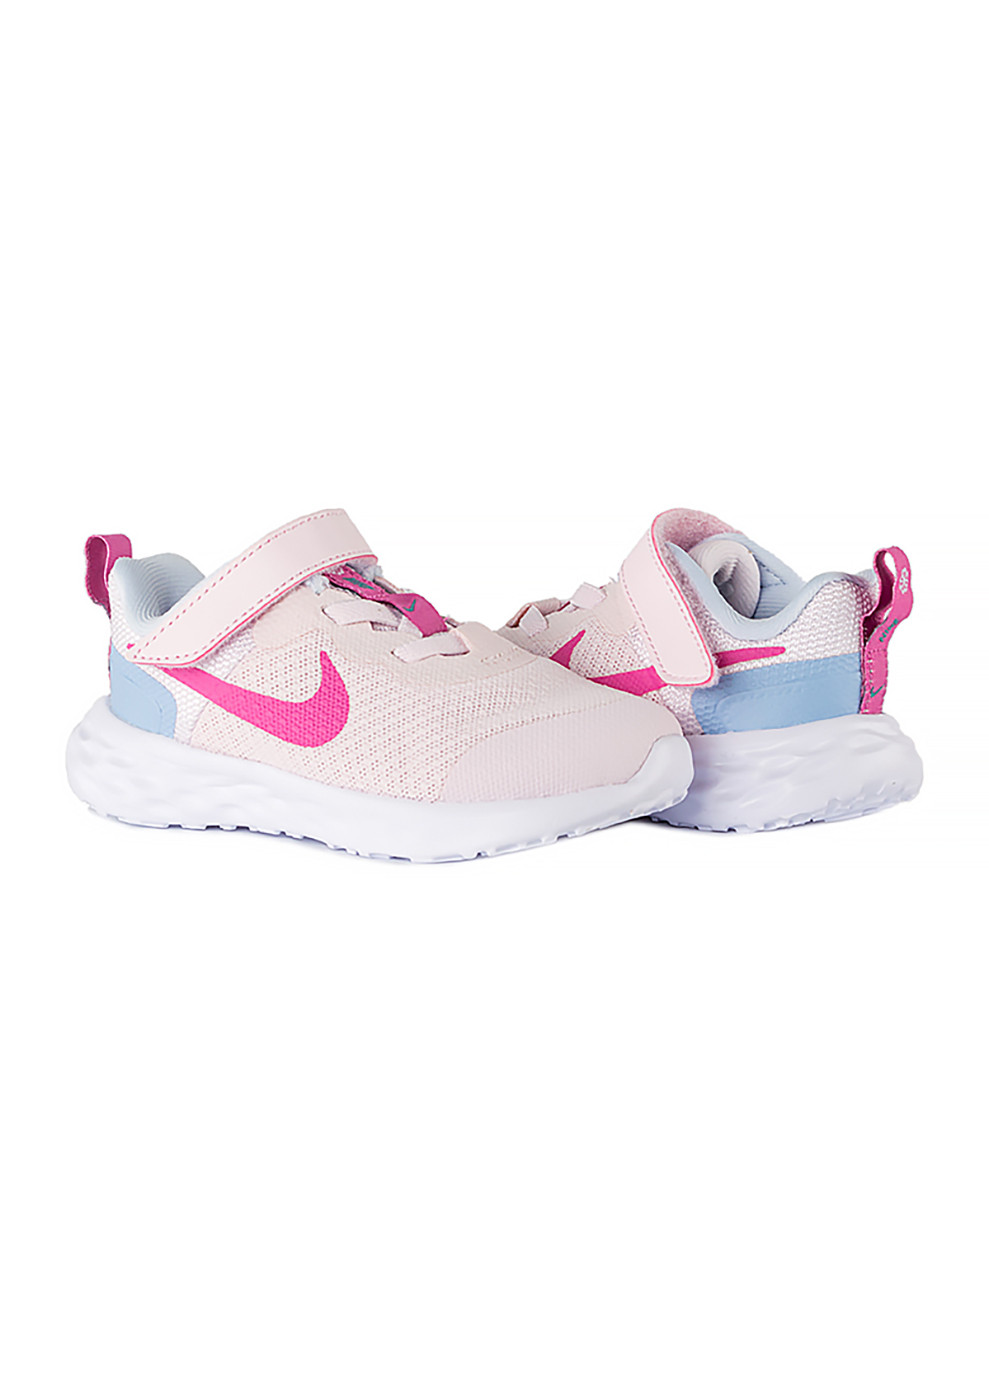 Розовые демисезонные детские кроссовки revolution 6 nn (tdv) Nike